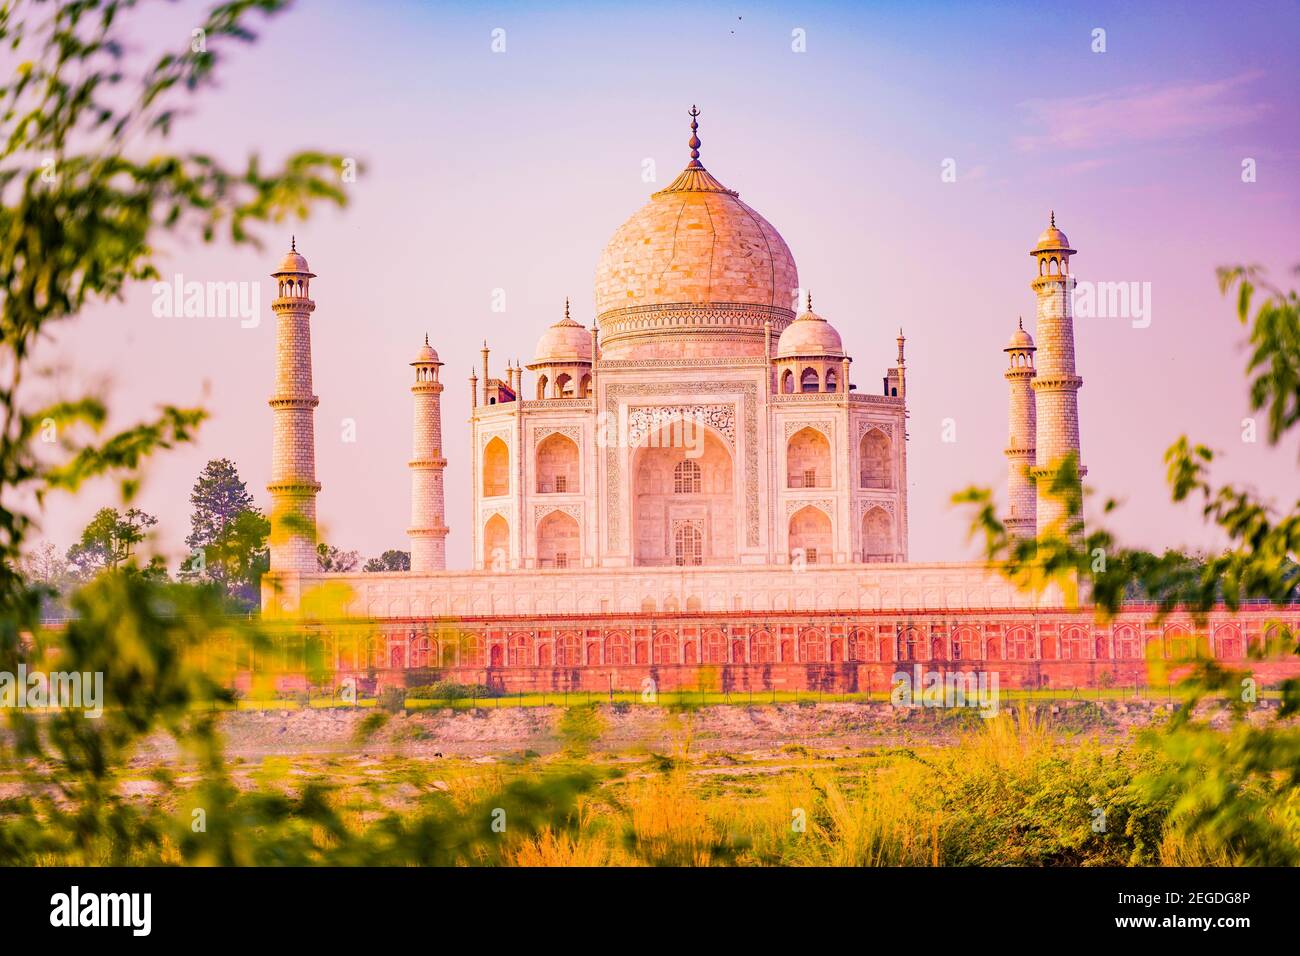 Das Taj Mahal ist ein Elfenbein - weißer Marmor mausoleum am südlichen Ufer des Yamuna Flusses in der indischen Stadt Agra. Stockfoto